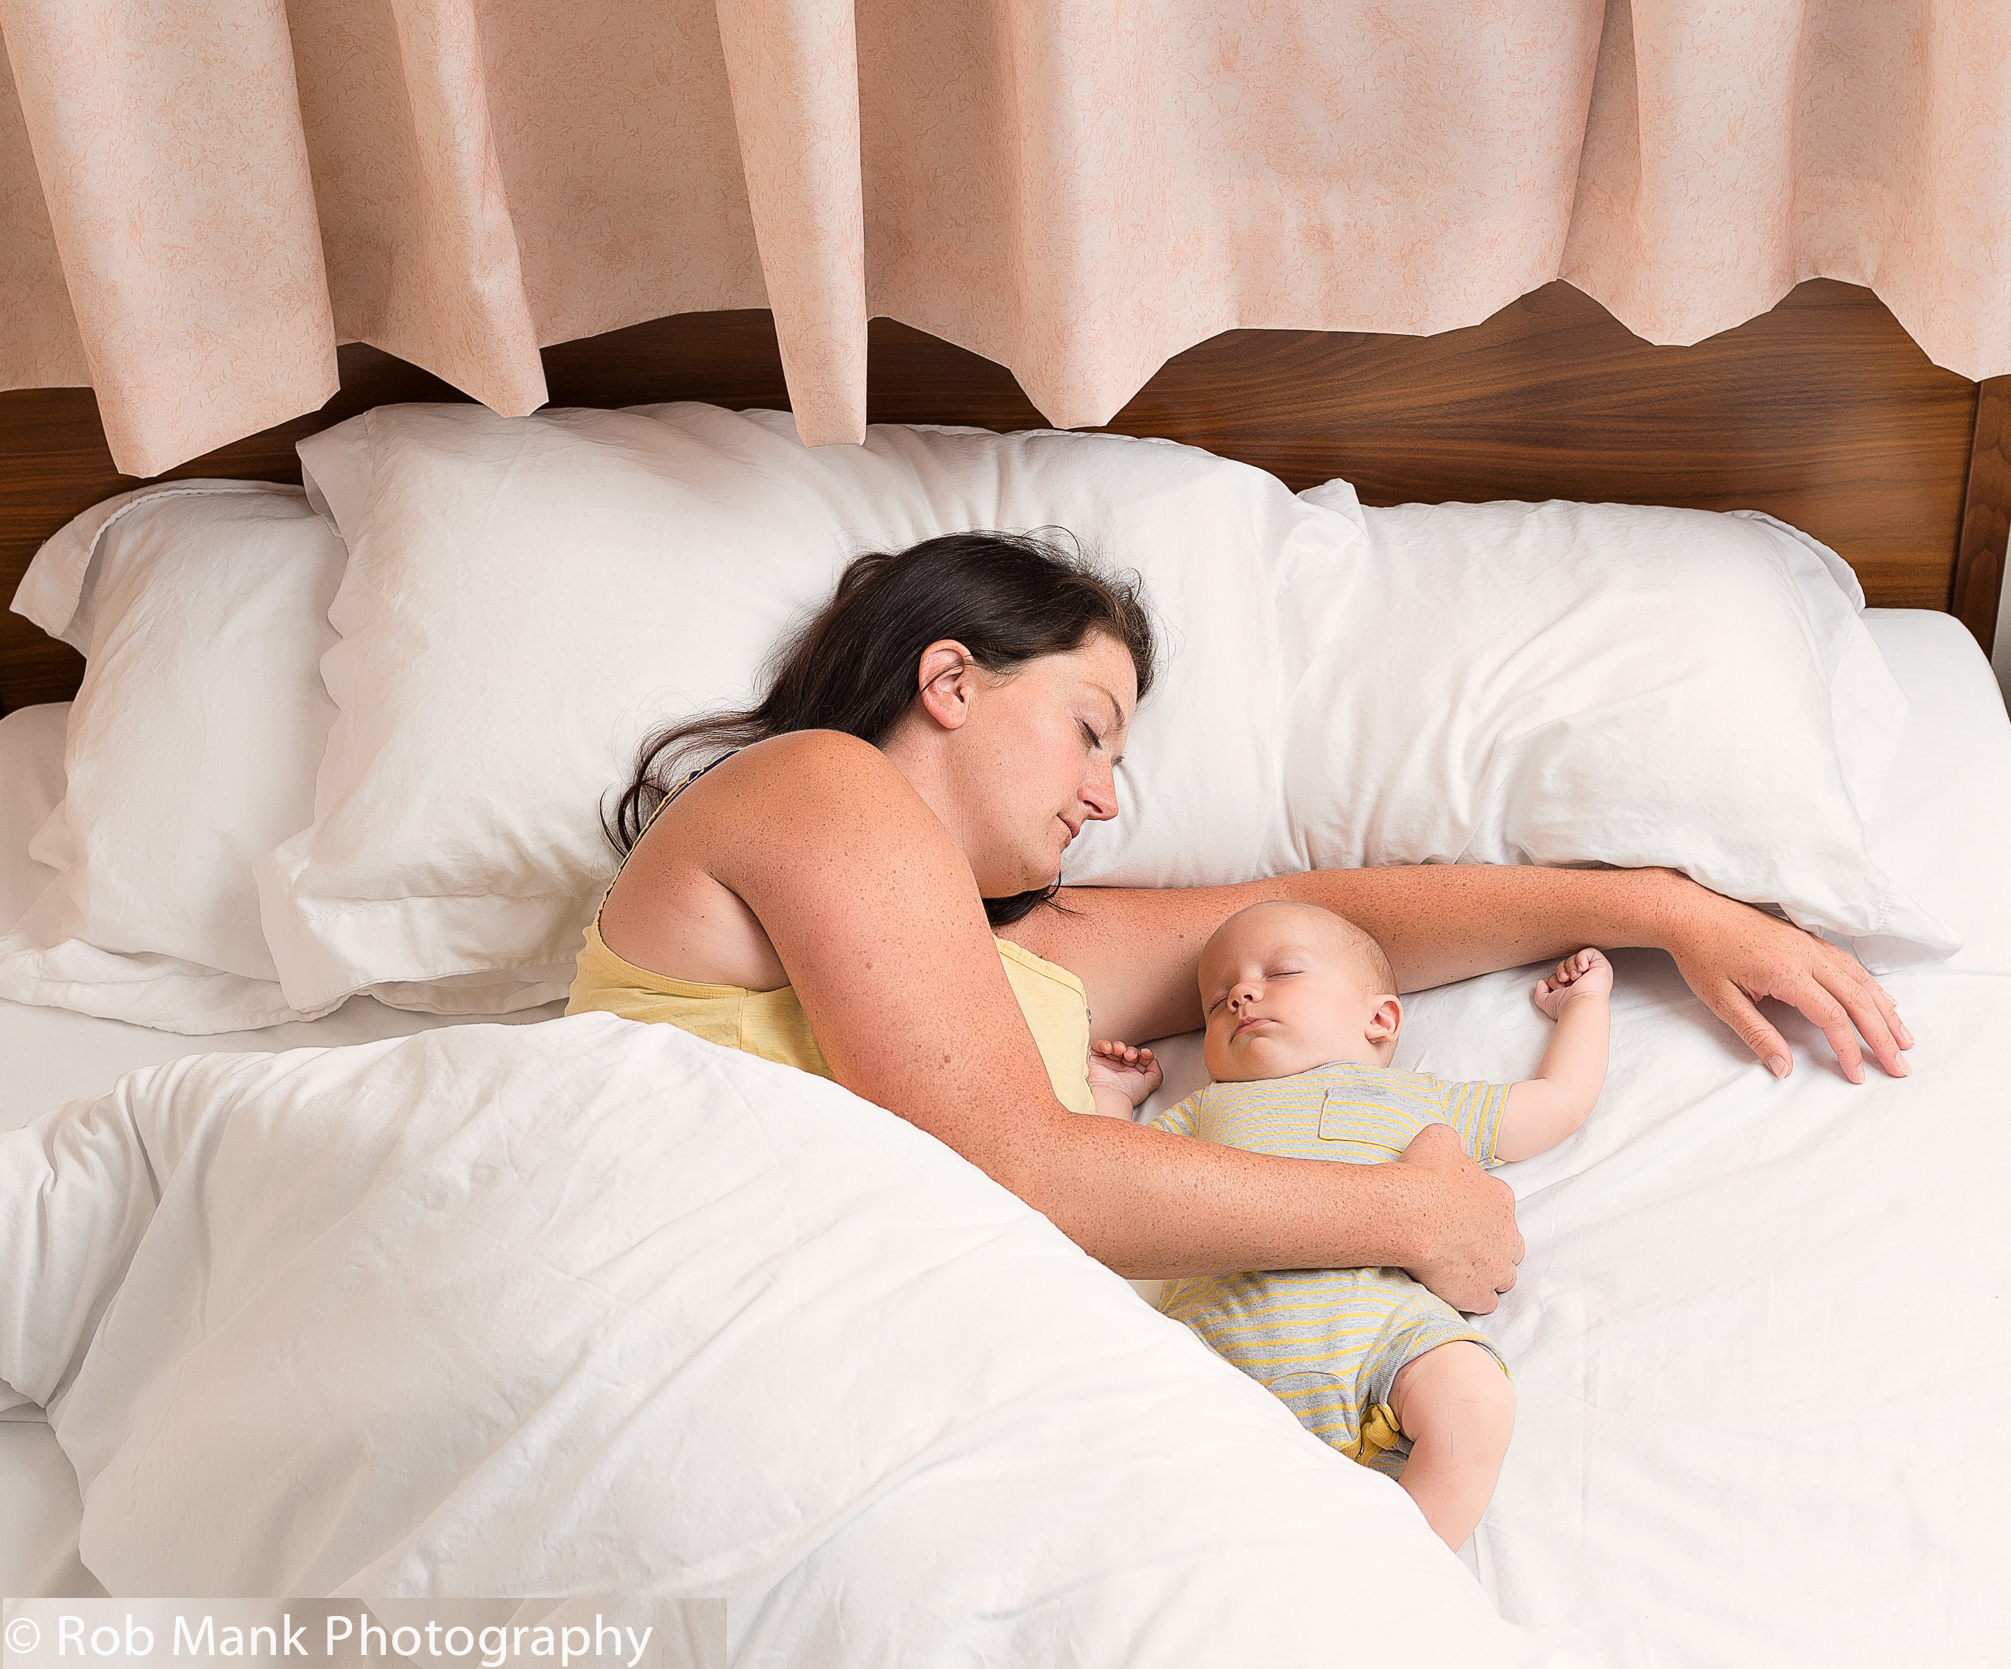 Спать вместе без. Совместный сон с ребенком. Совместный сон с ребенко. Позы для совместного сна с ребенком. Безопасные позы для совместного сна.